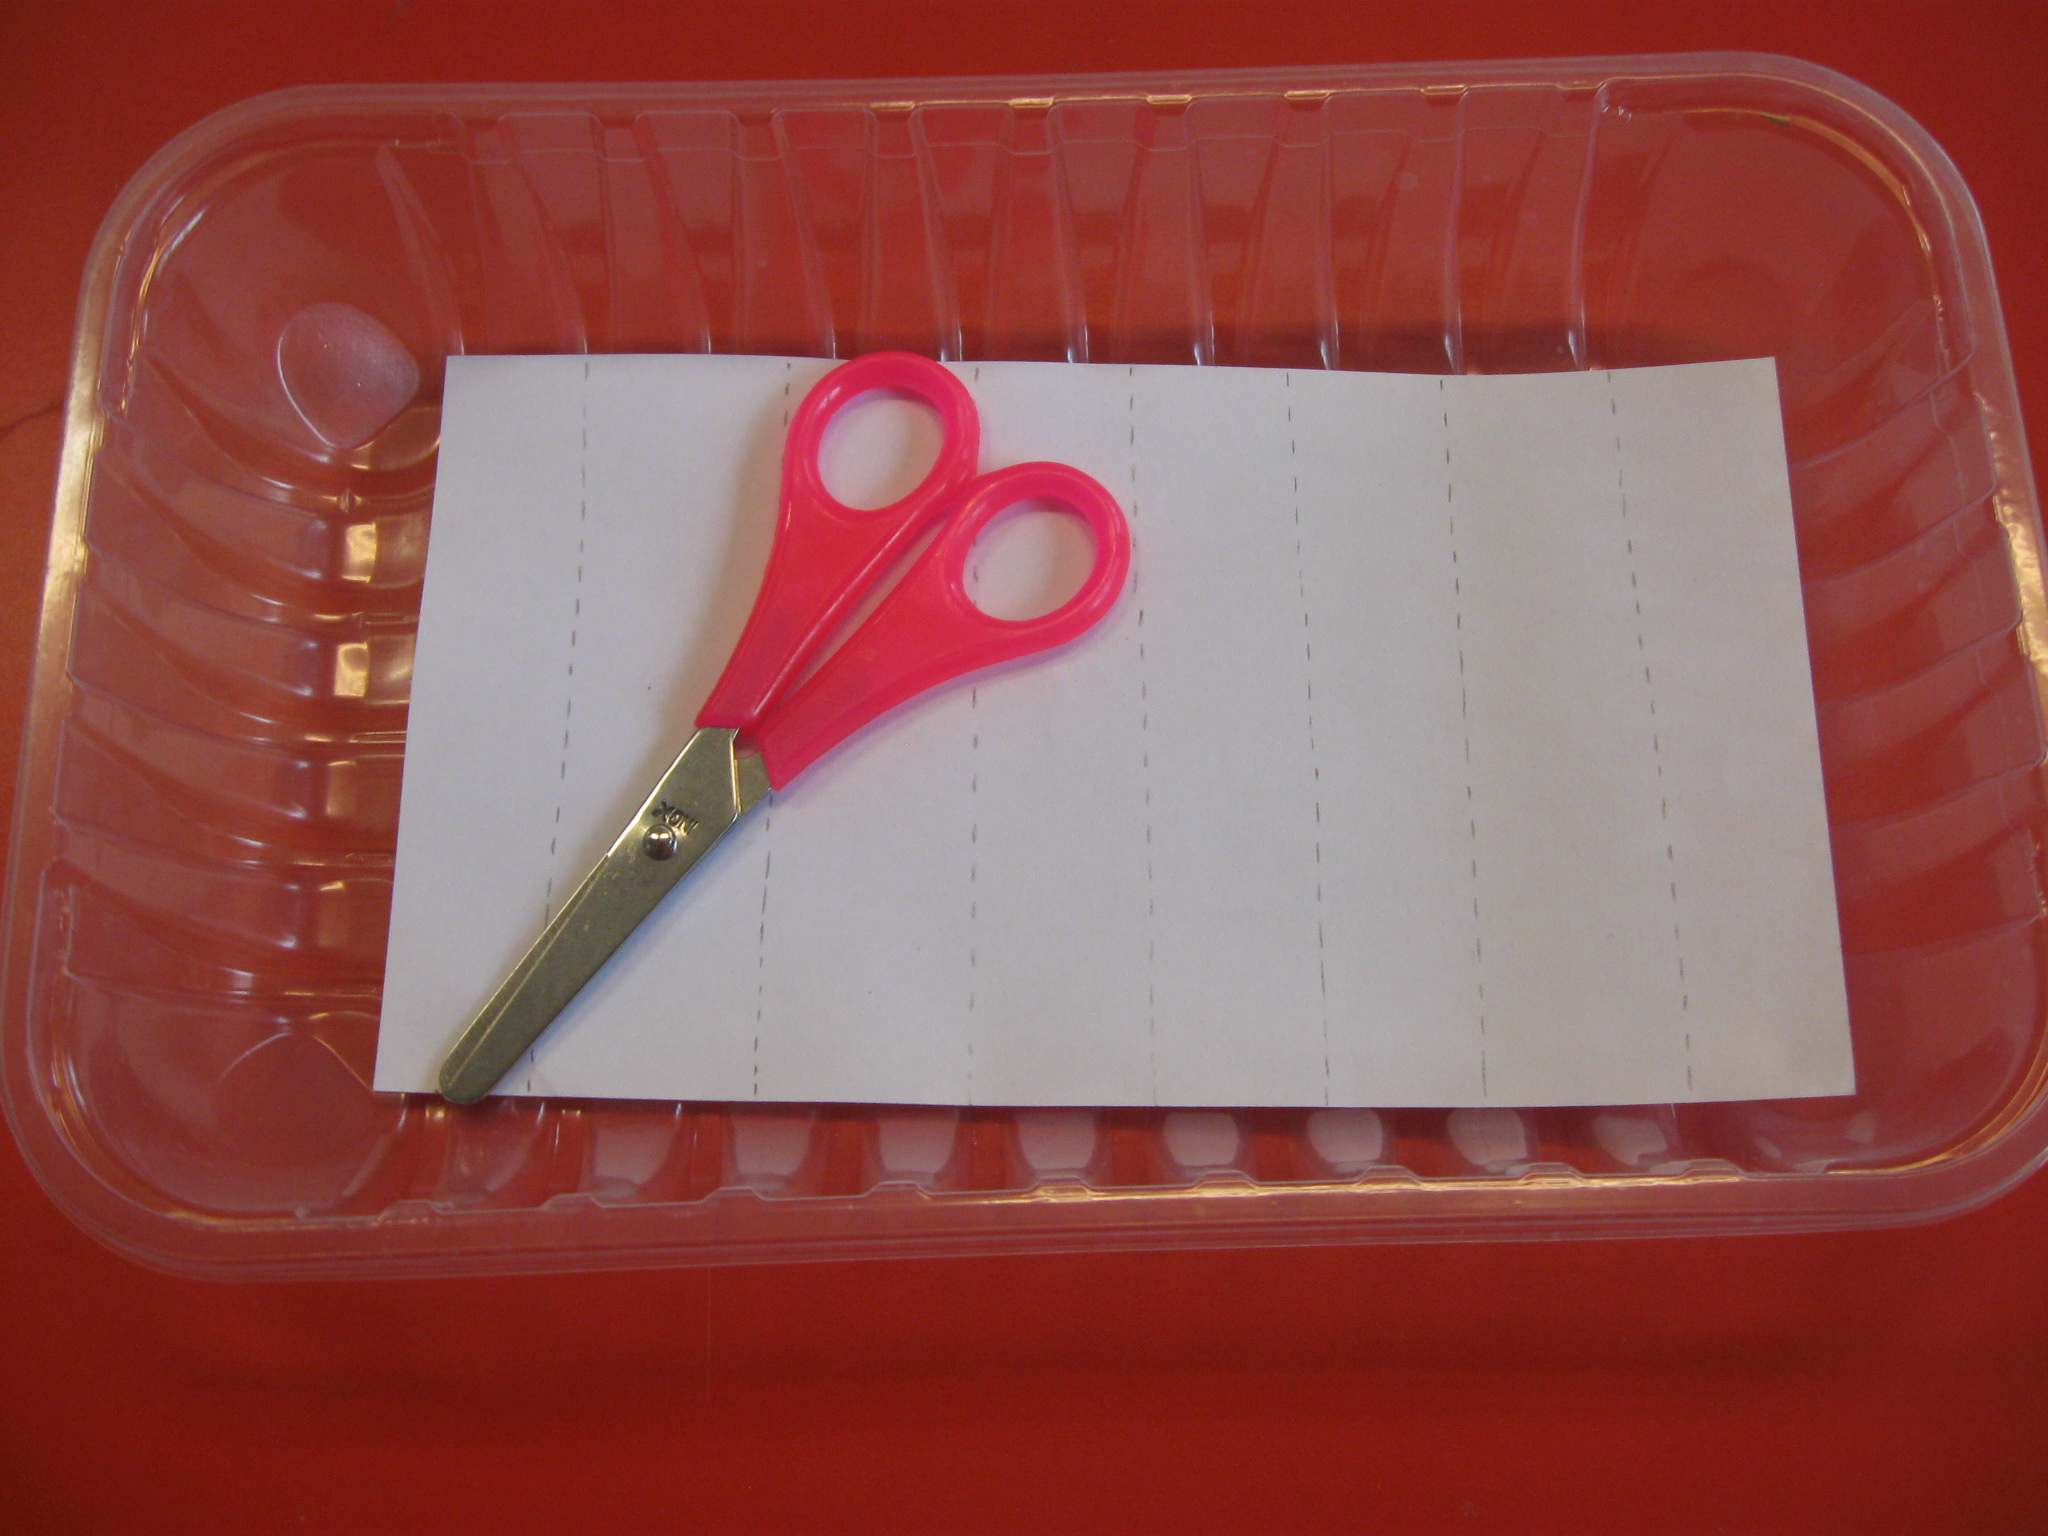 In una vaschetta ci sono un paio di forbici e un foglio con disegnate linee verticali tratteggiate.